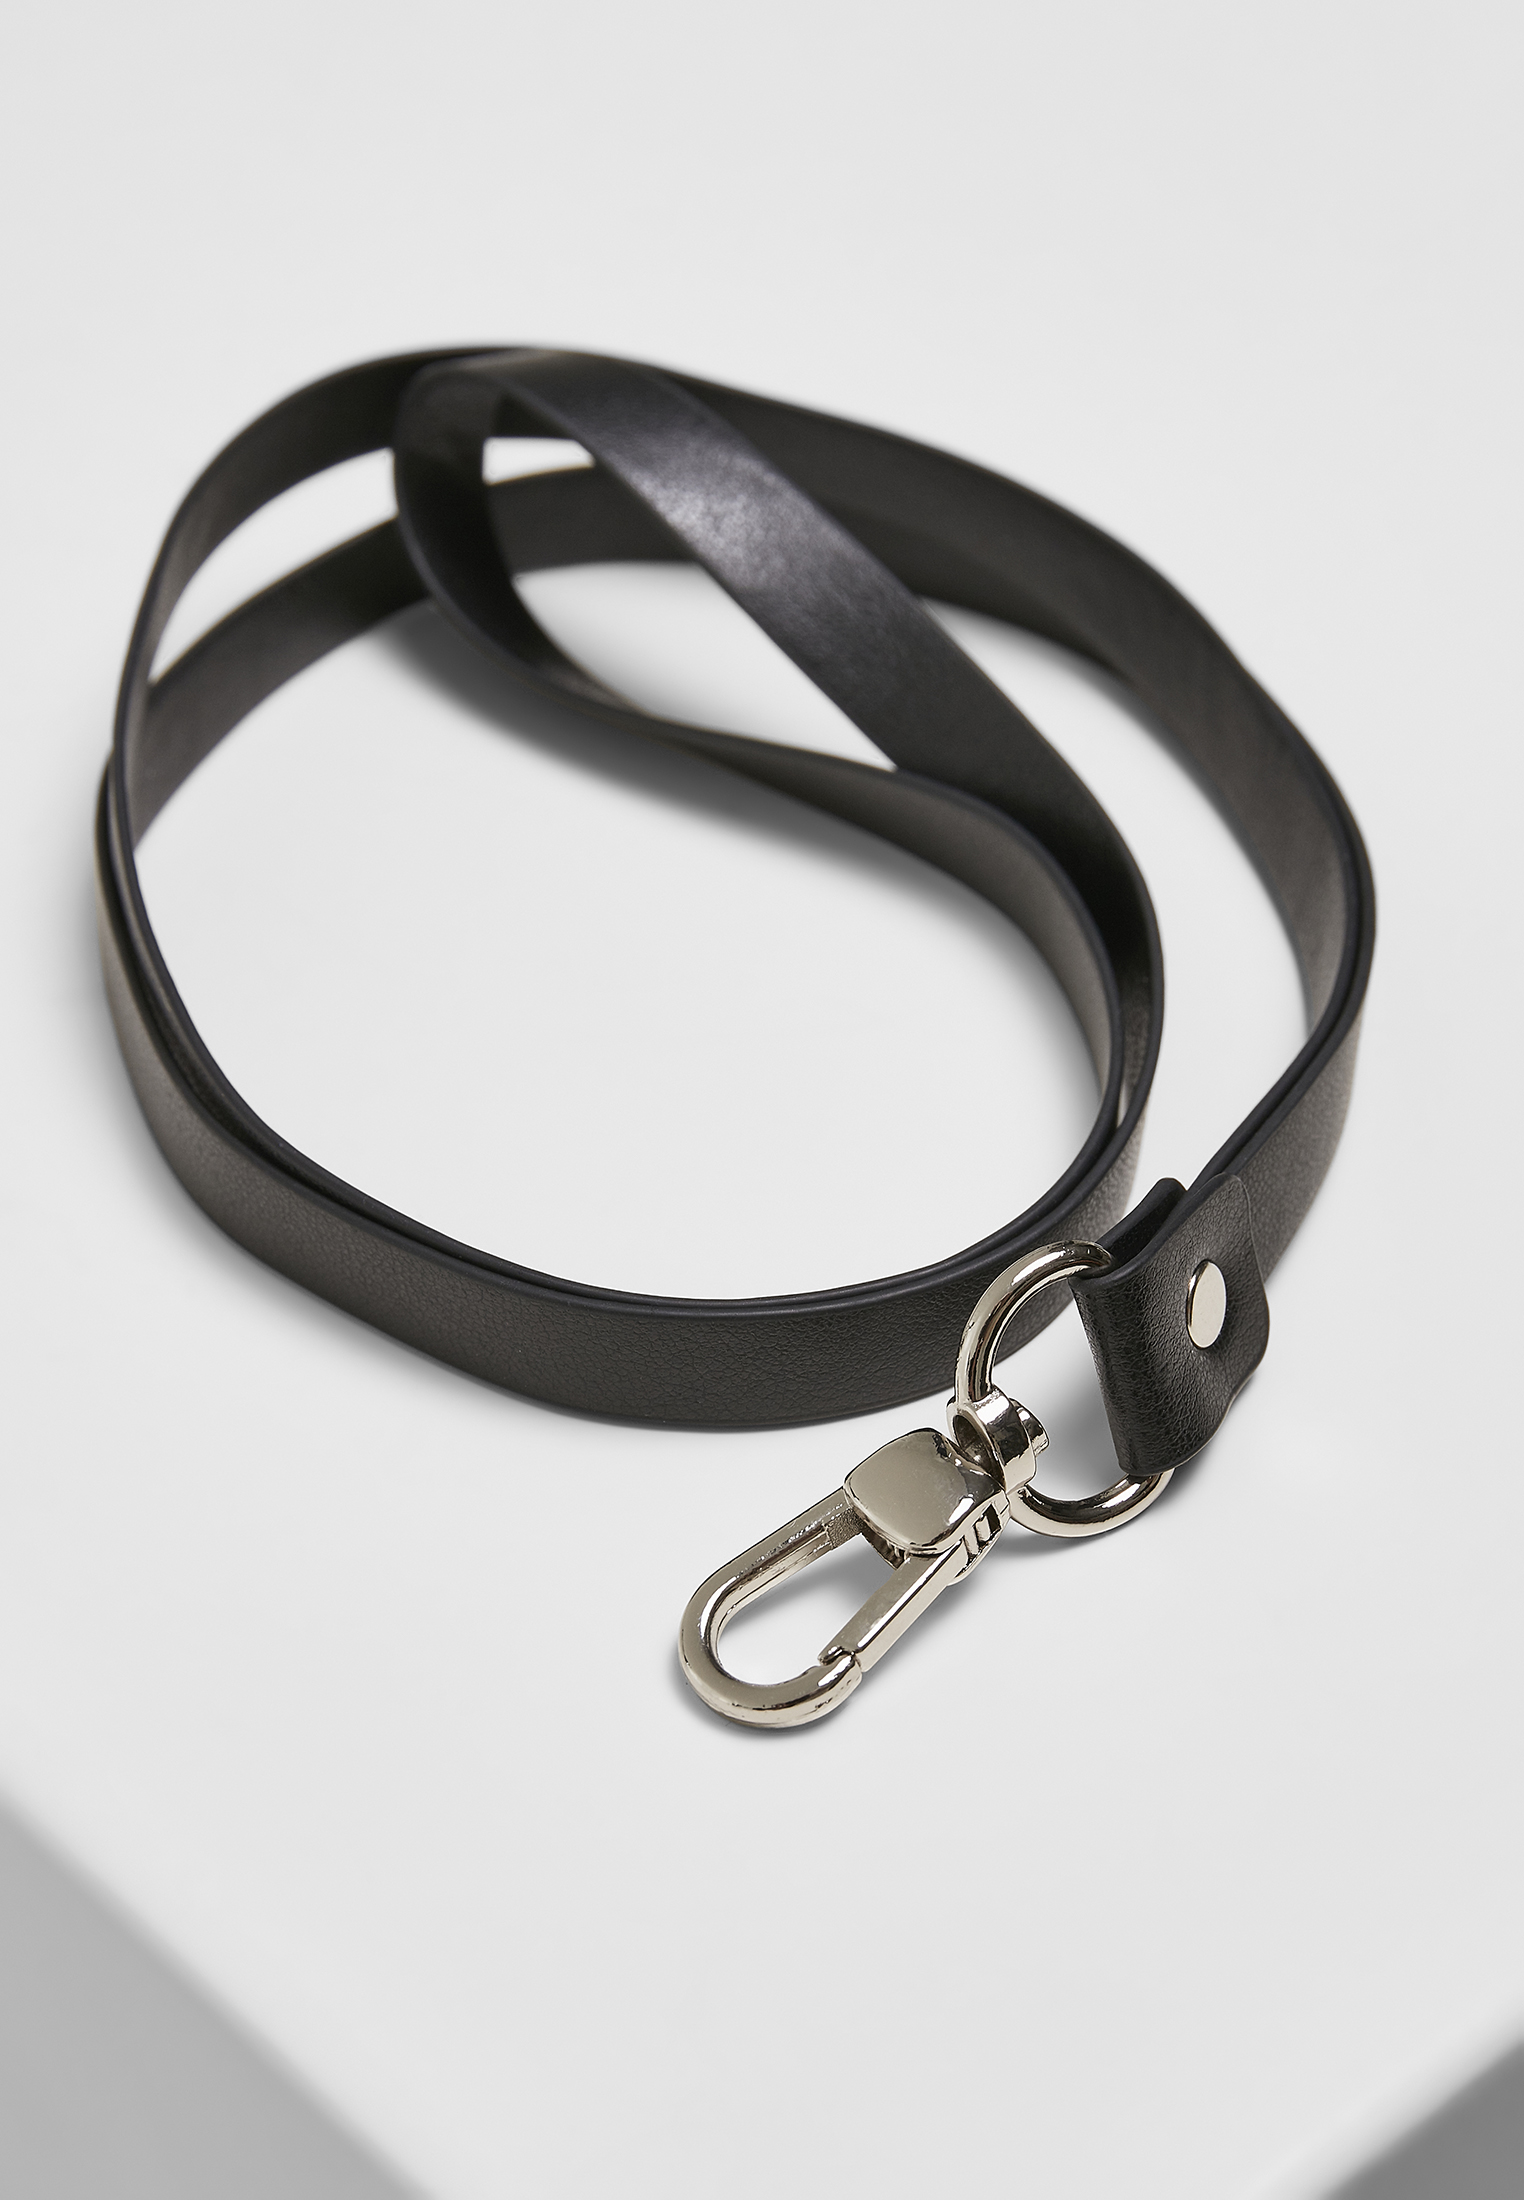 Taschen Earphone Case Necklace in Farbe black